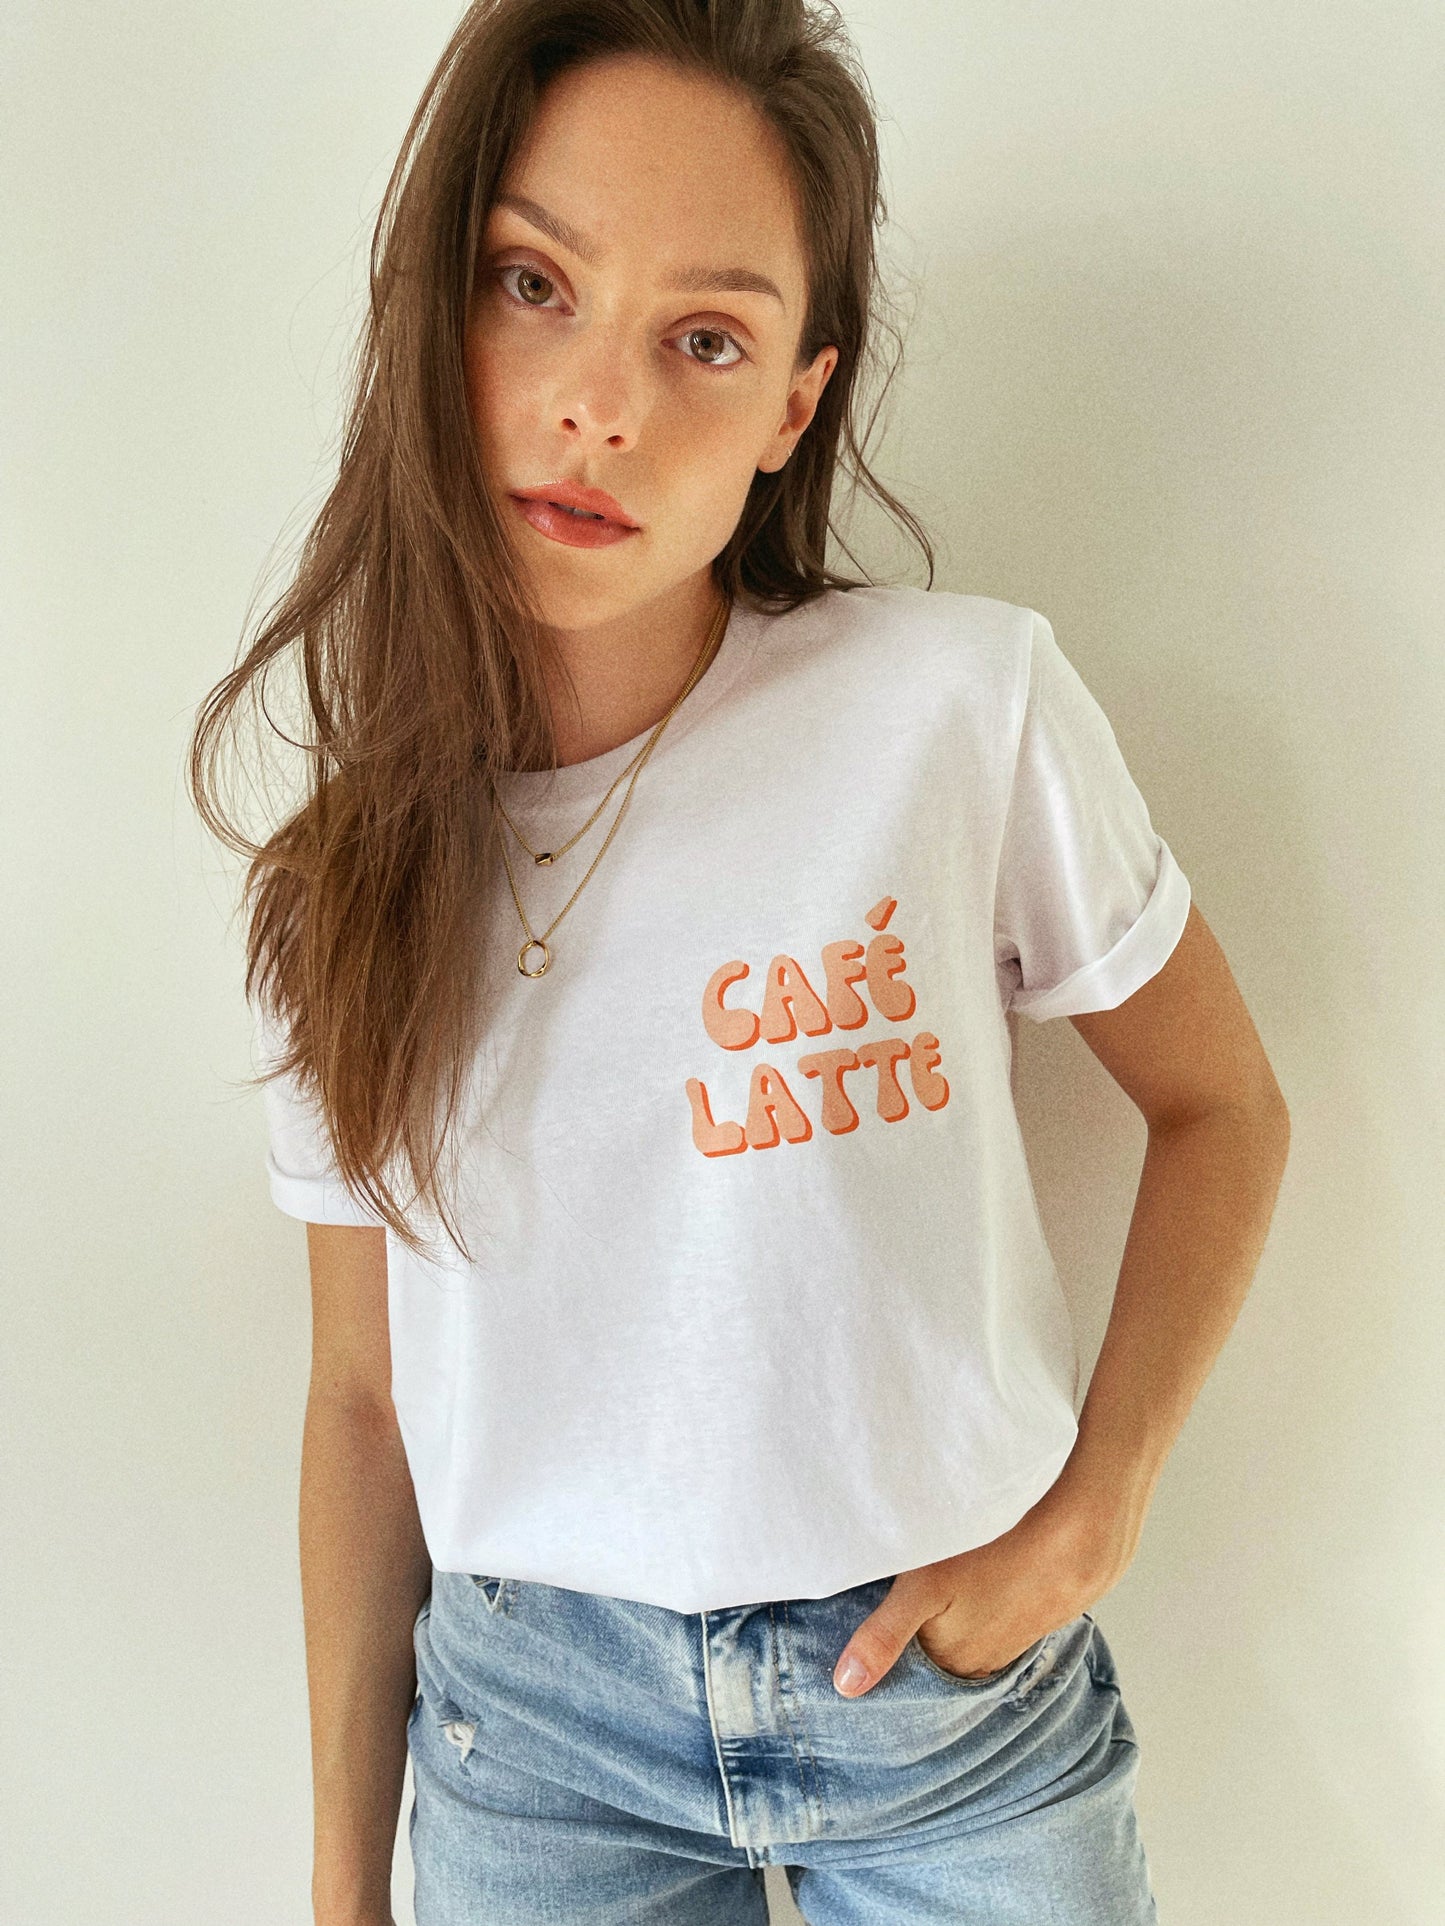 Le T-shirt Café Latte